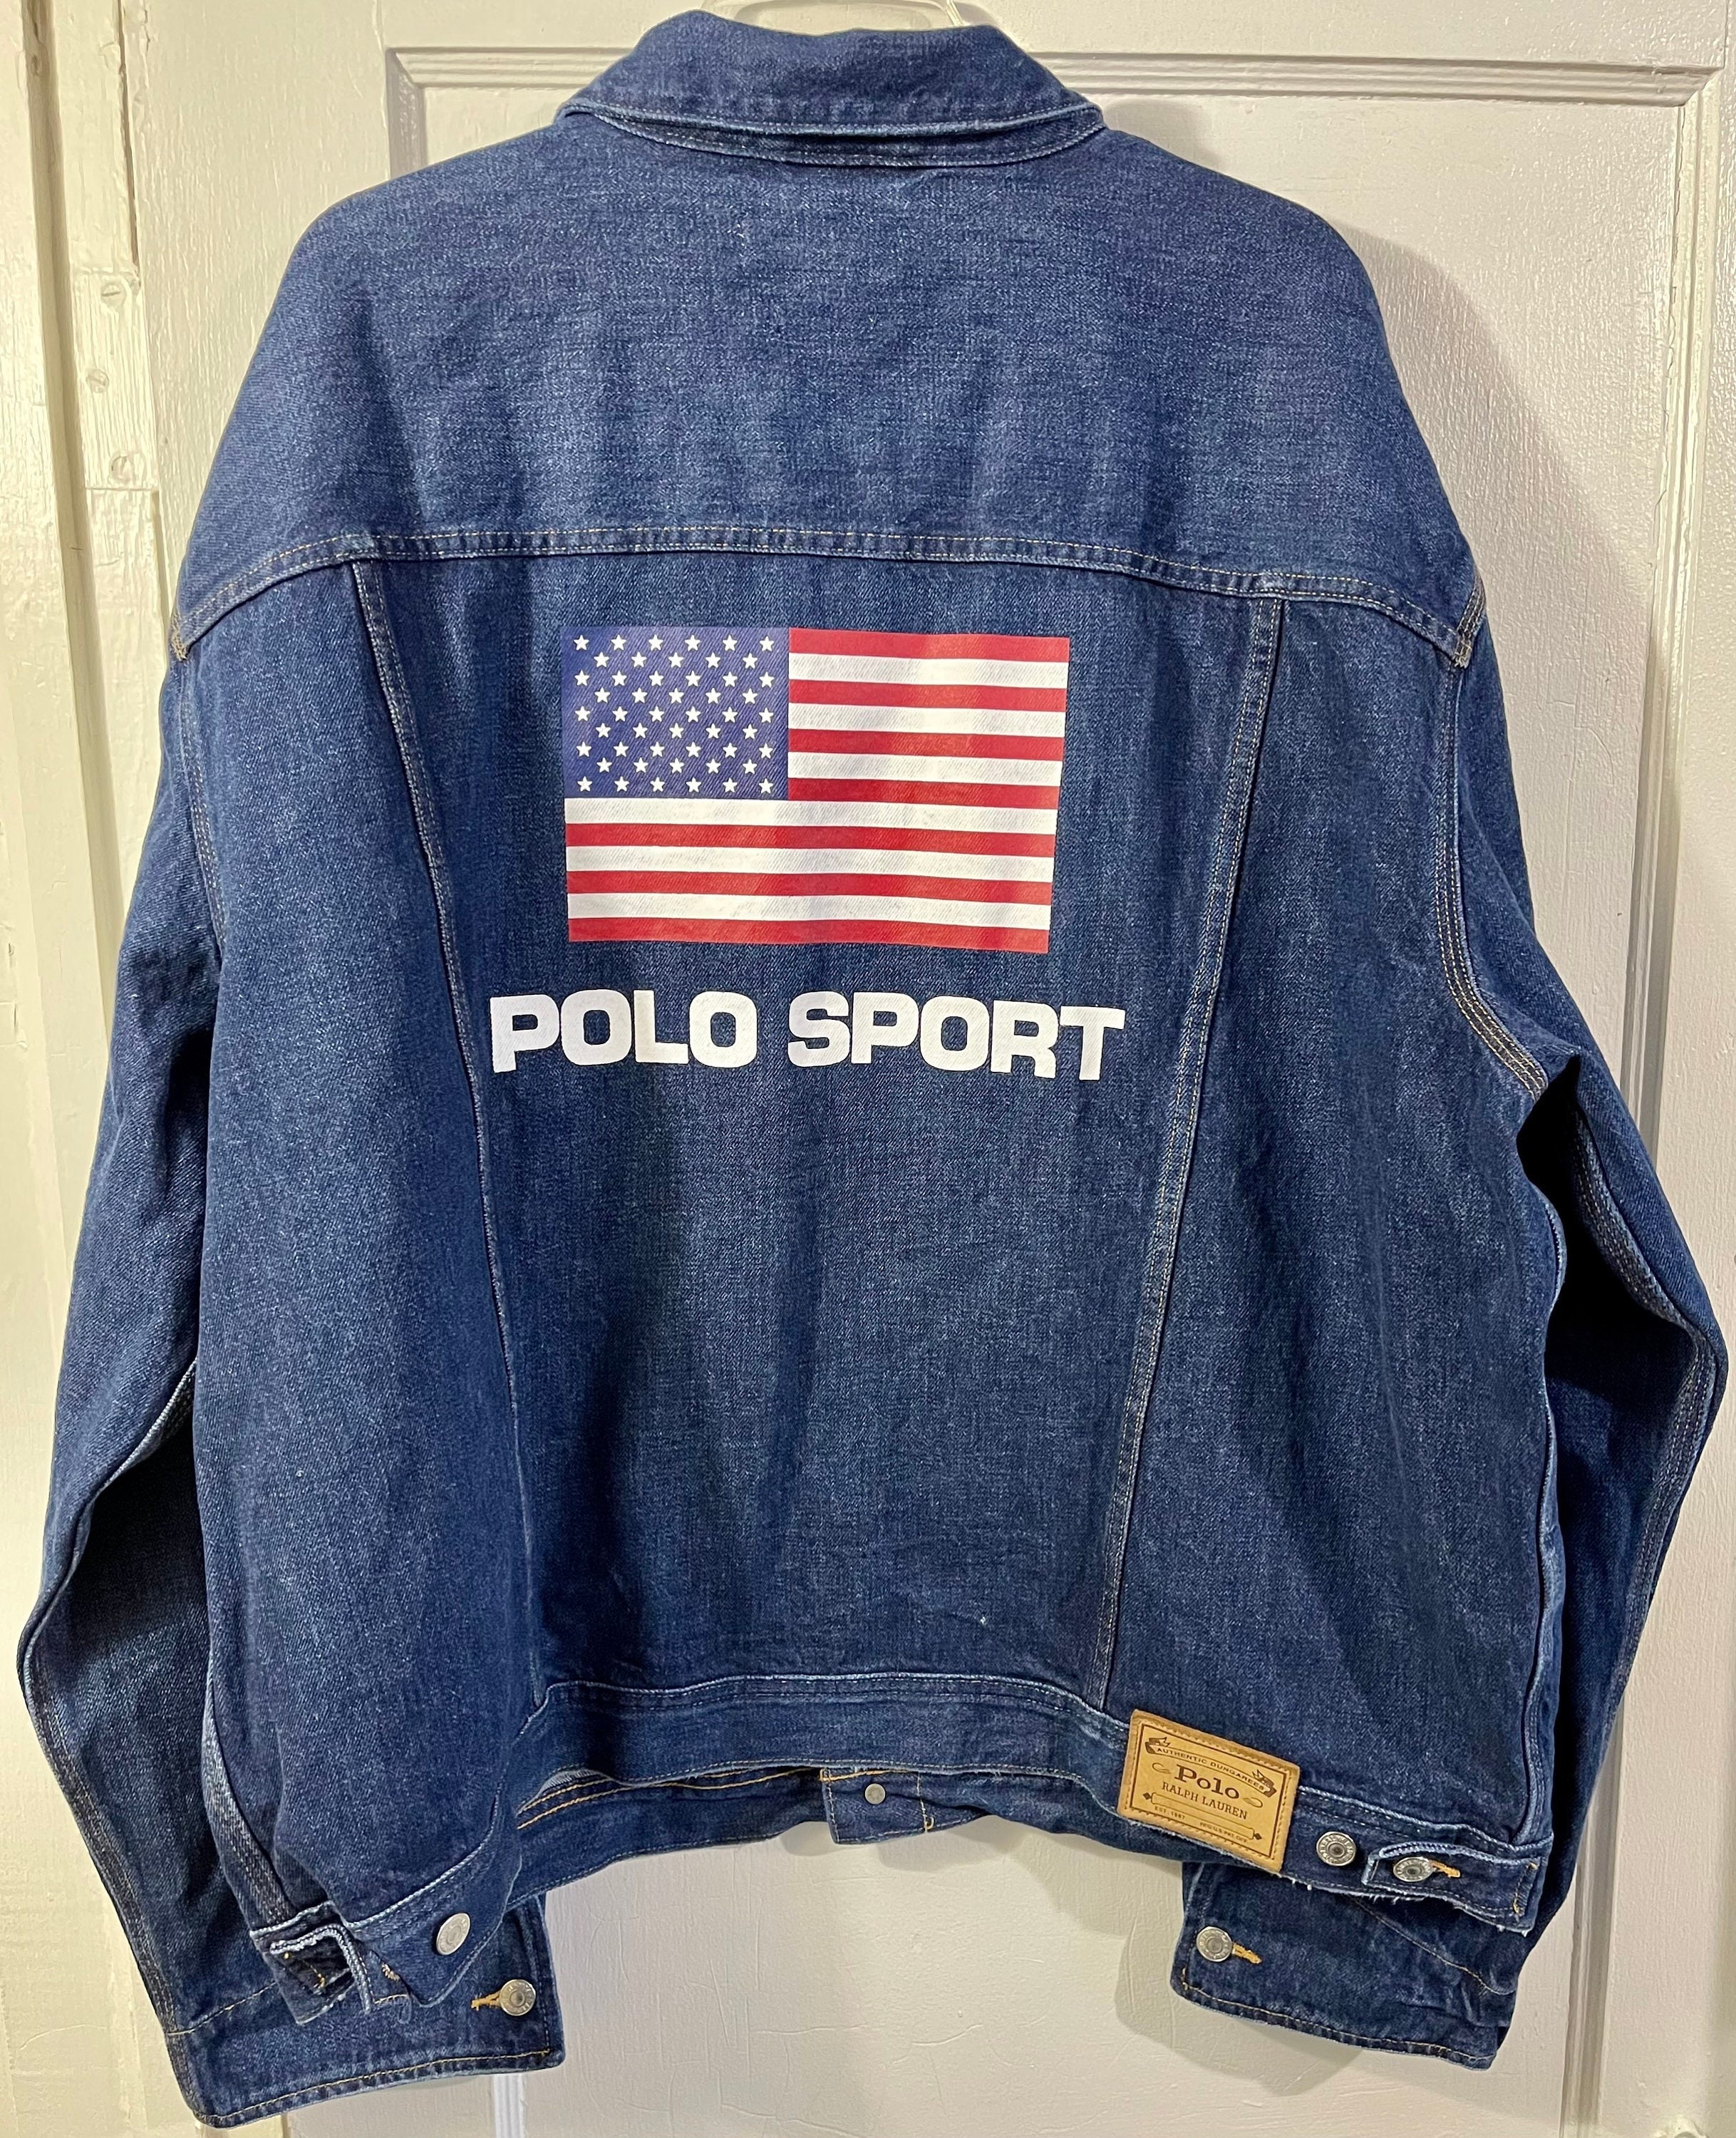 Polo Sport Jacket - Etsy